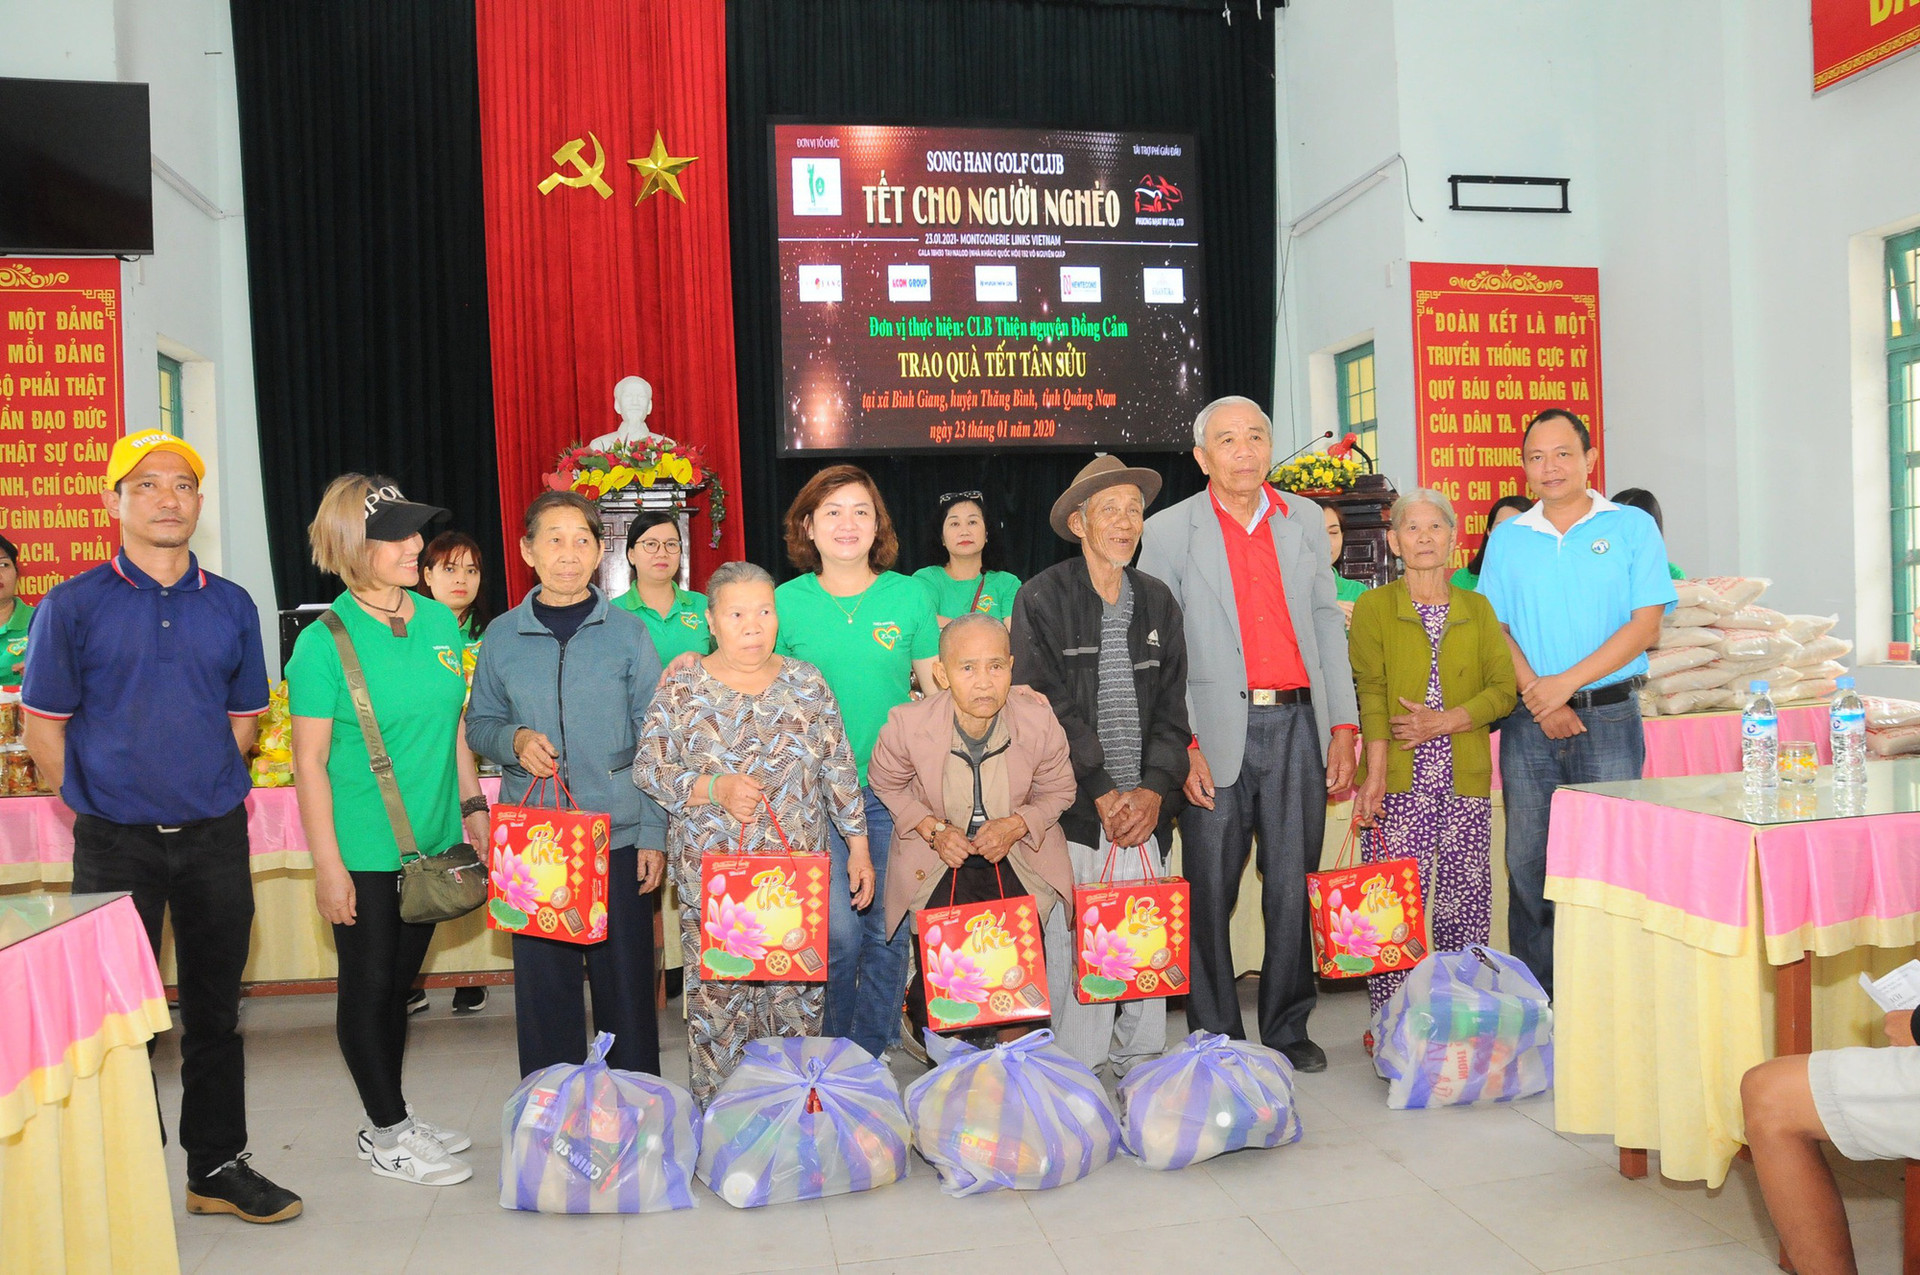 CLB Sông Hàn tổ chức giải từ thiện Tết cho người nghèo lần 2 - Ảnh 1.